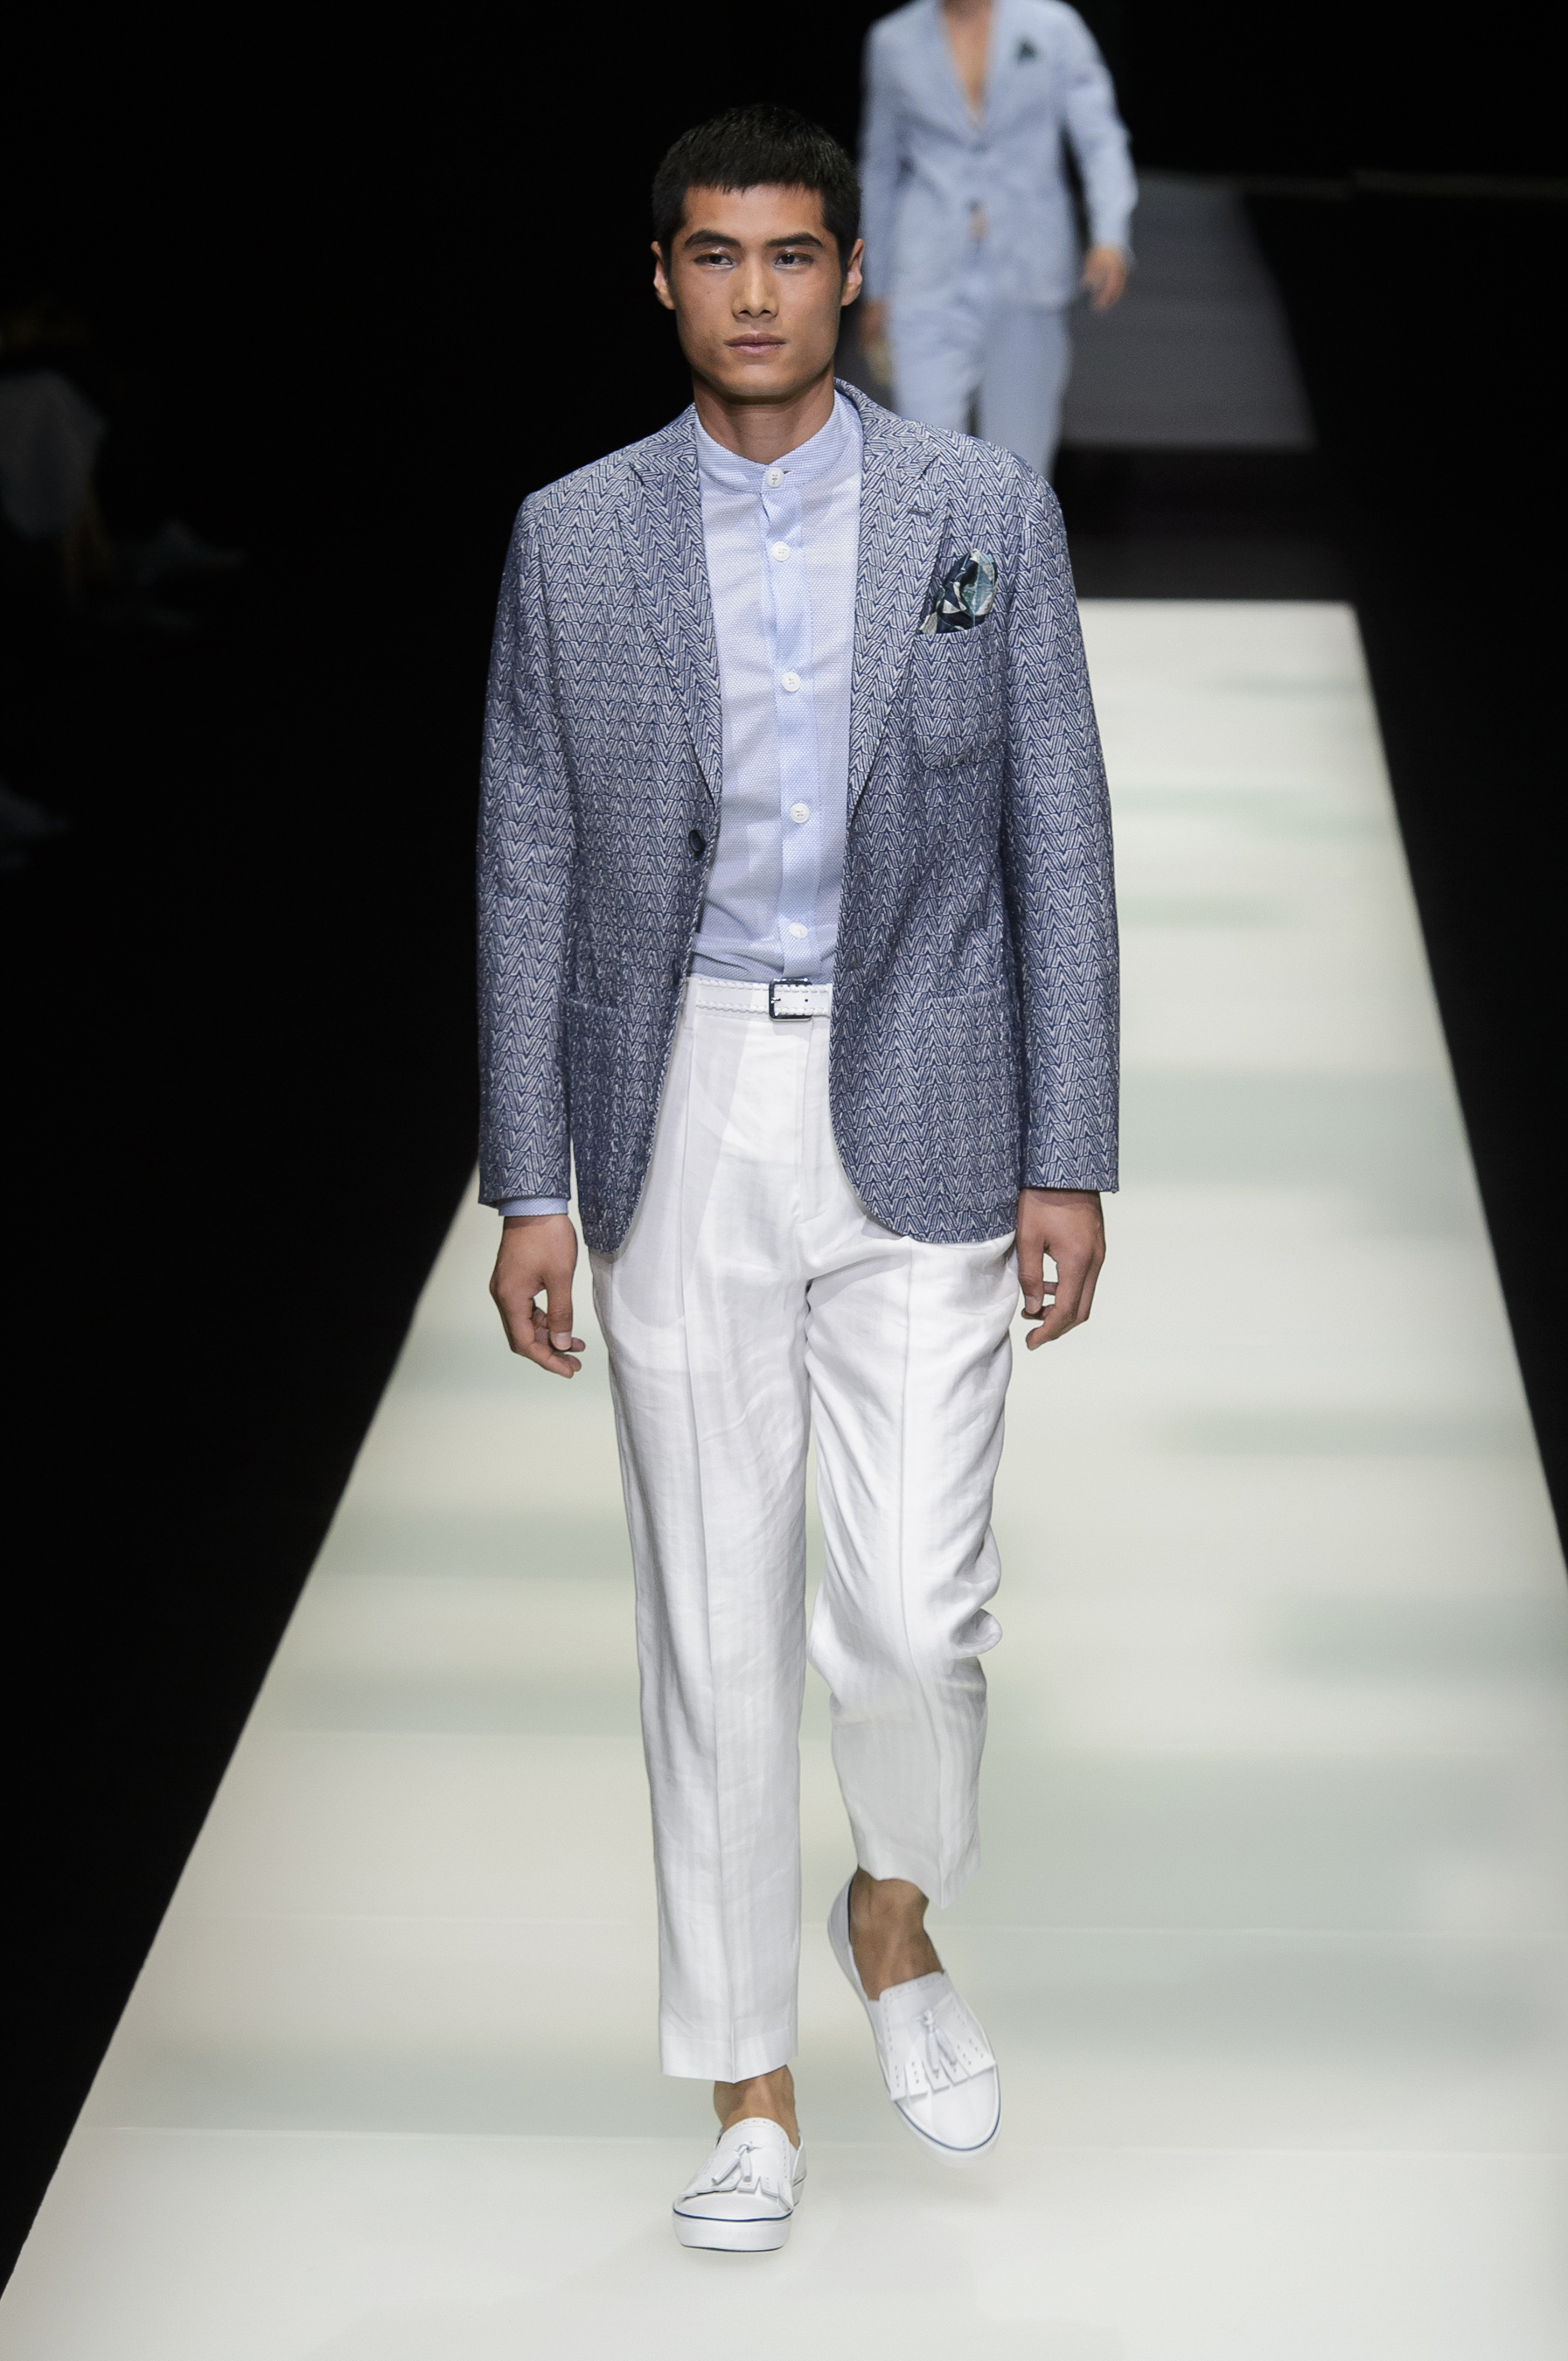 Giorgio Armani Spring 2018 Men's Fashion Show - The Impression